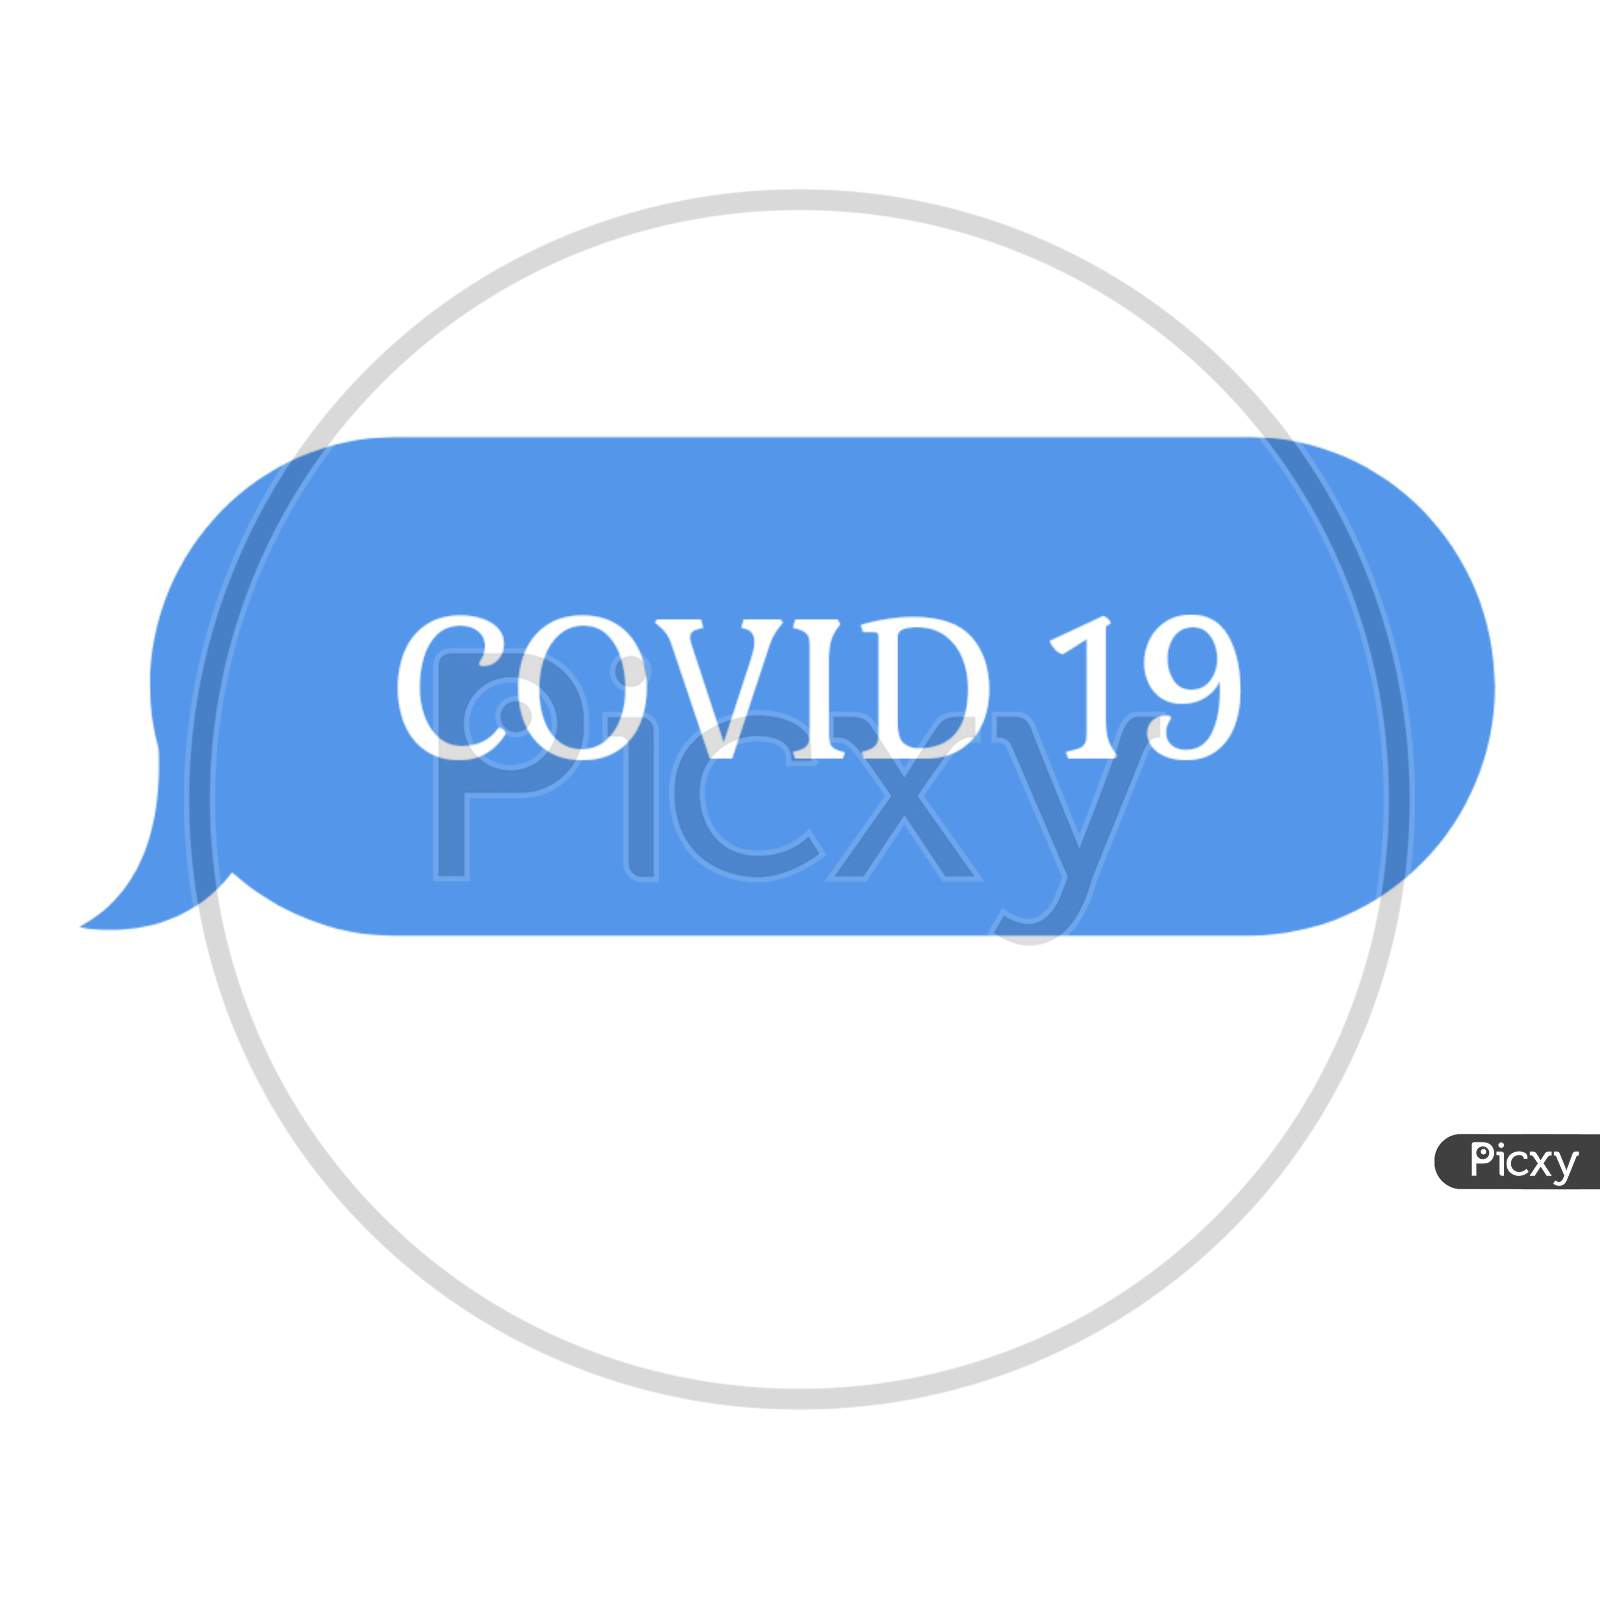 Covid 19 logo design